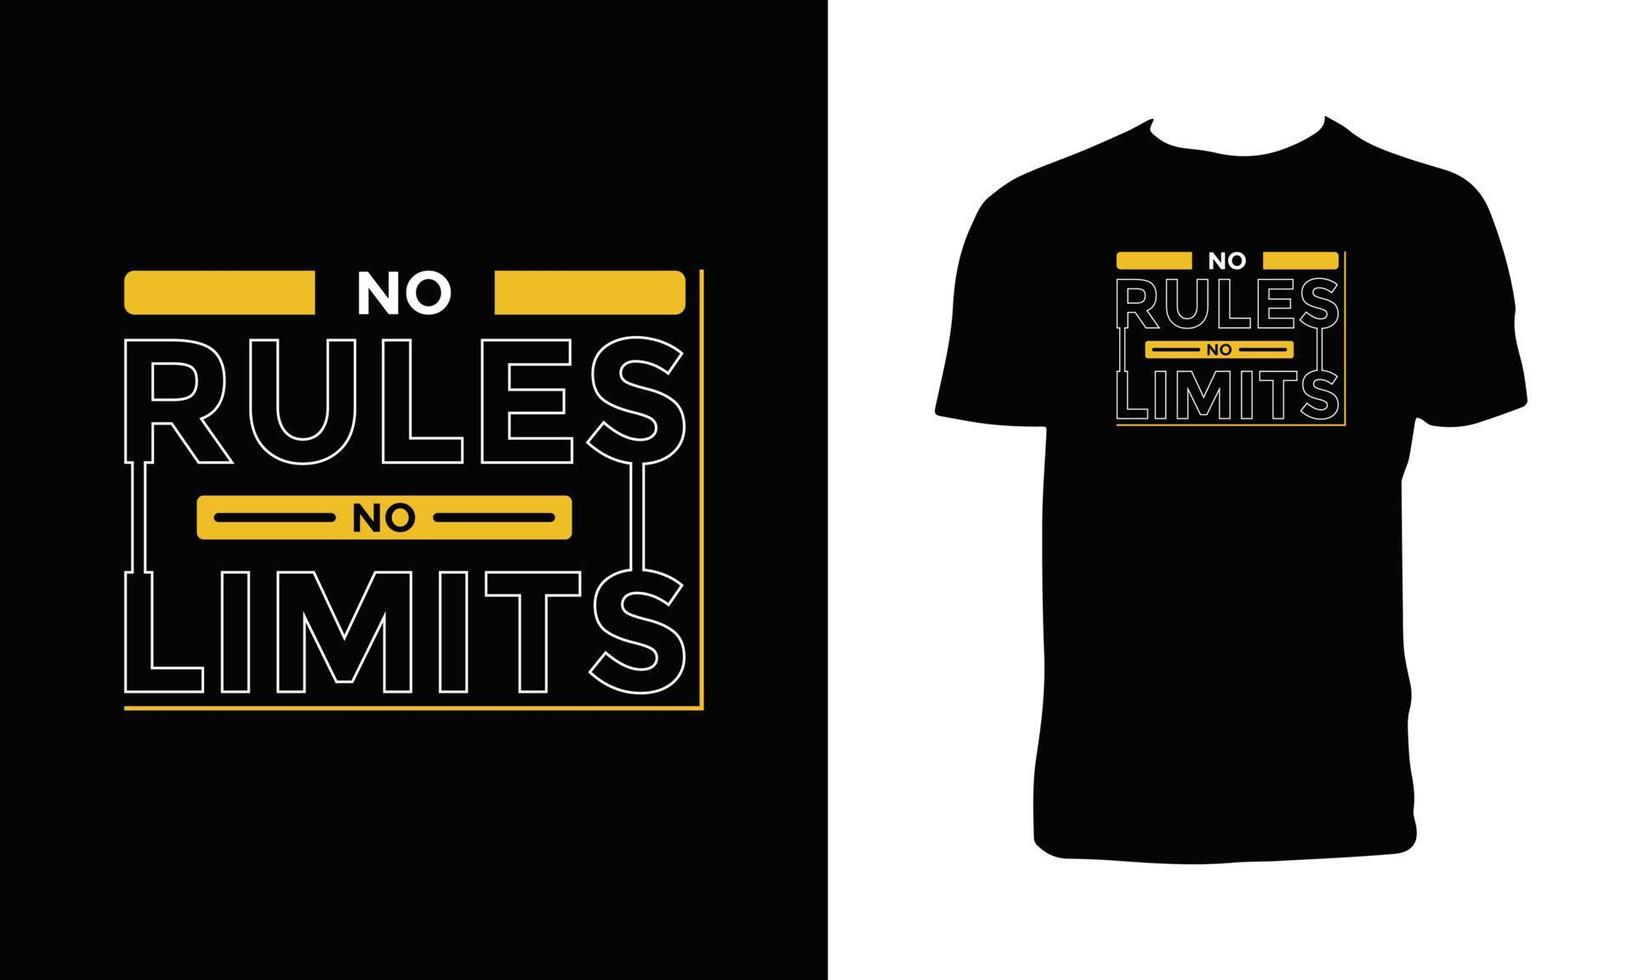 No rules no limits t shirt and apparel design. vector